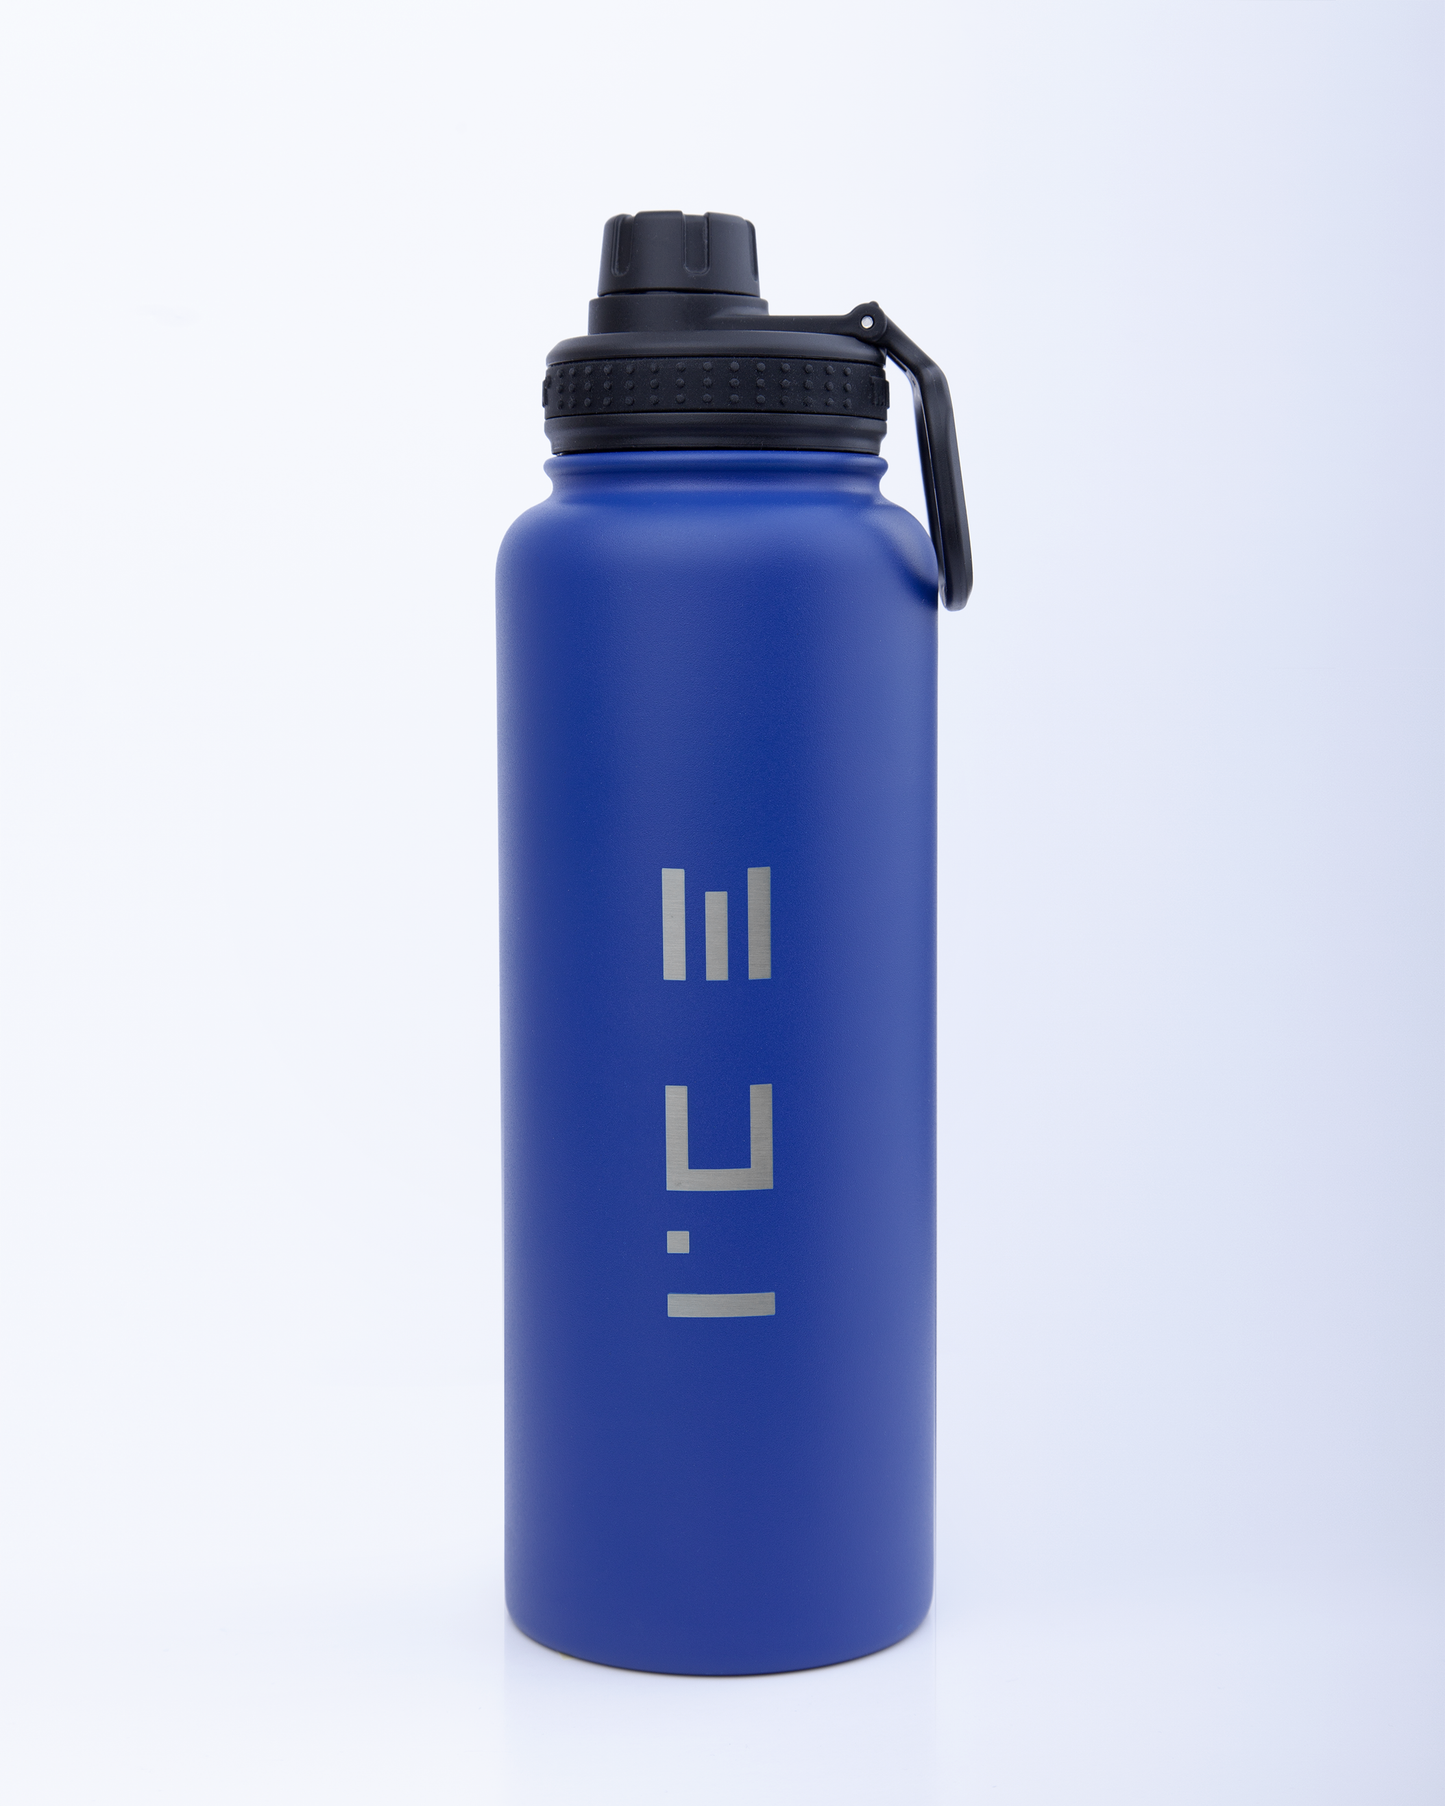 ICE Water Bottle in Blue - 64 oz